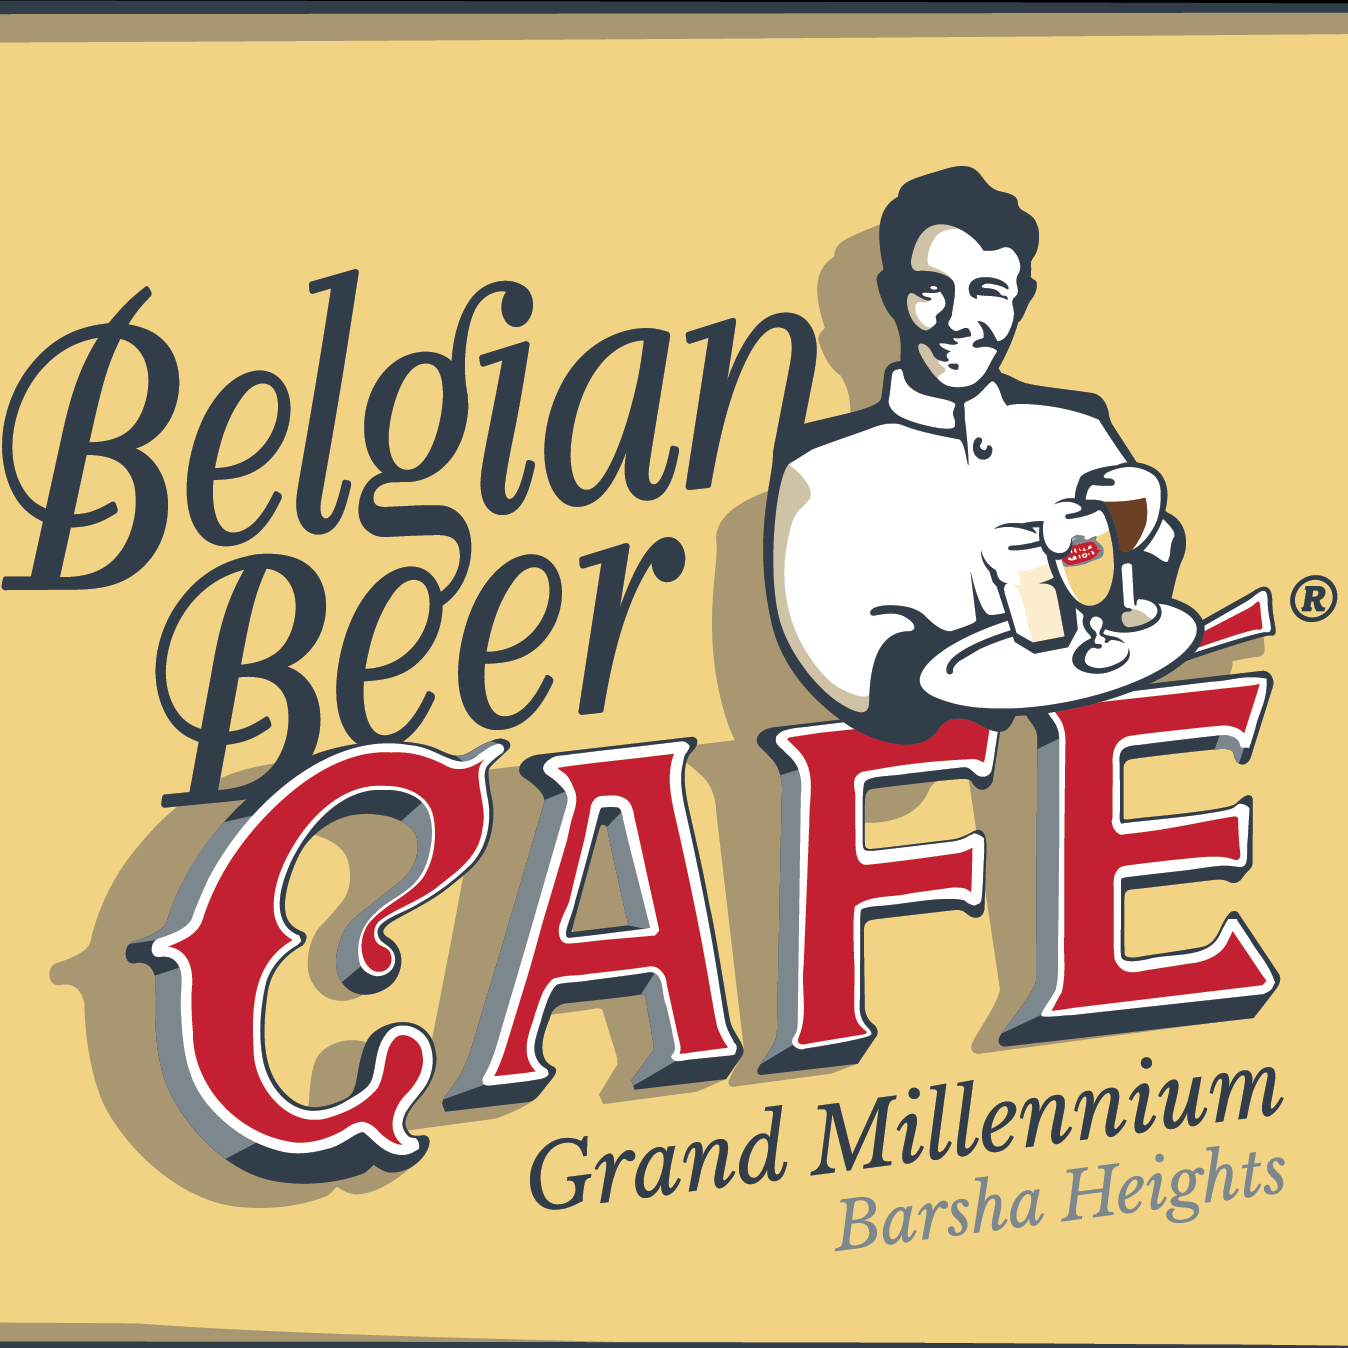 BelgianBeer Cafe